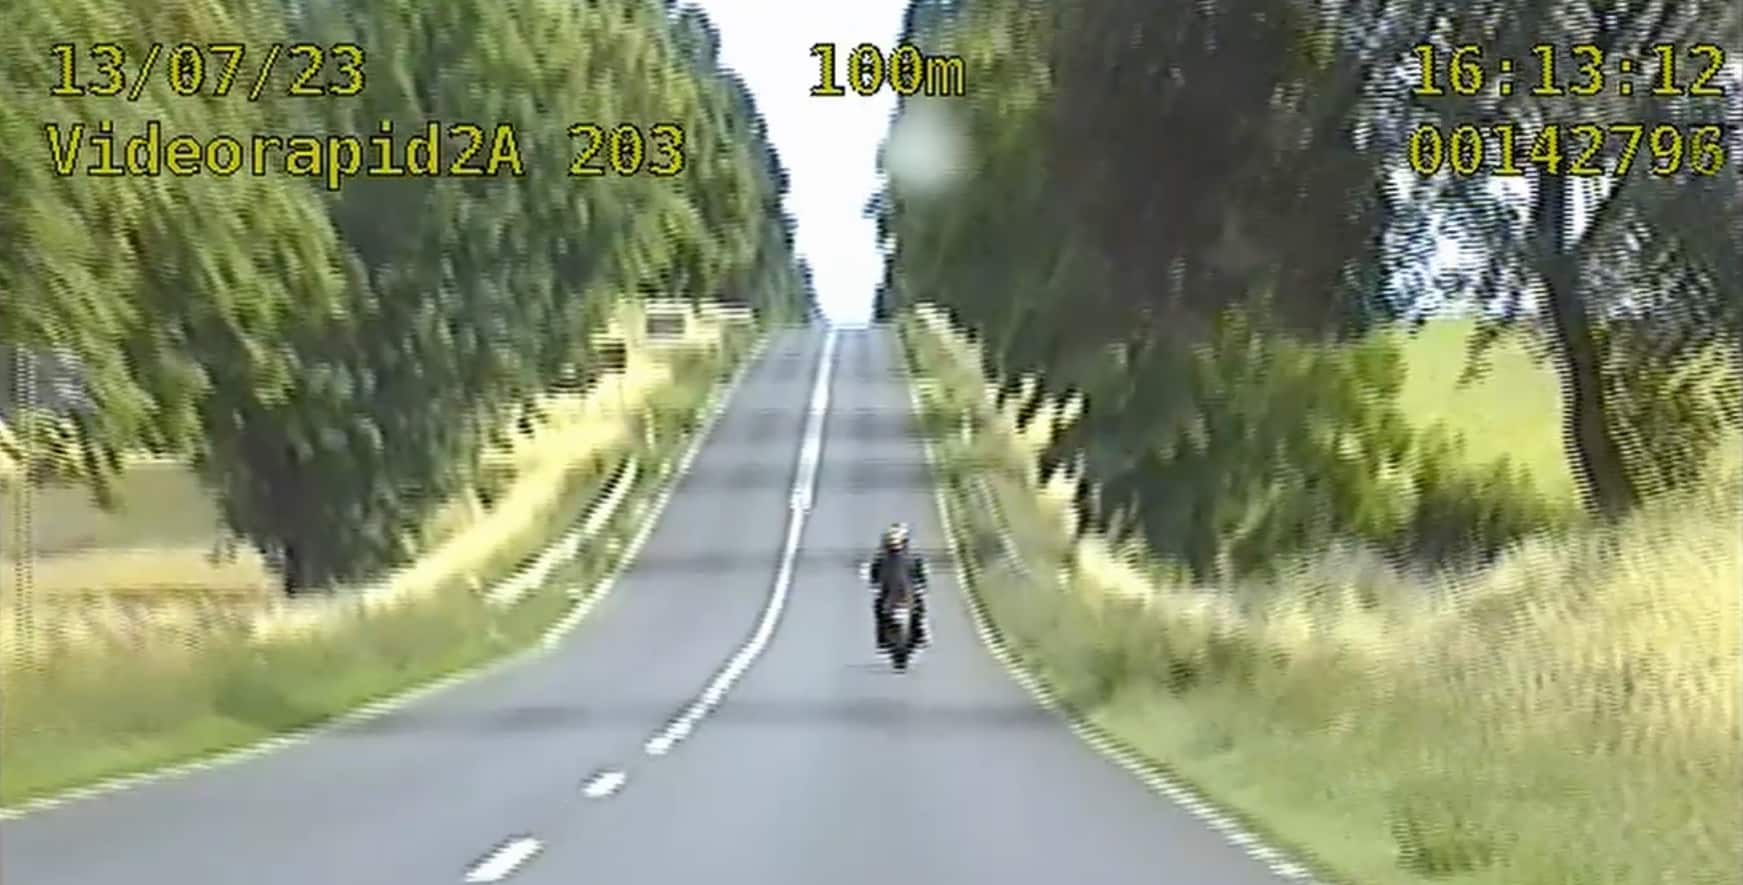 Motocyklista pędził z 6-letnim pasażerem 154 km/h. Publikujemy nagranie Na sygnale Kętrzyn, Wiadomości, zShowcase